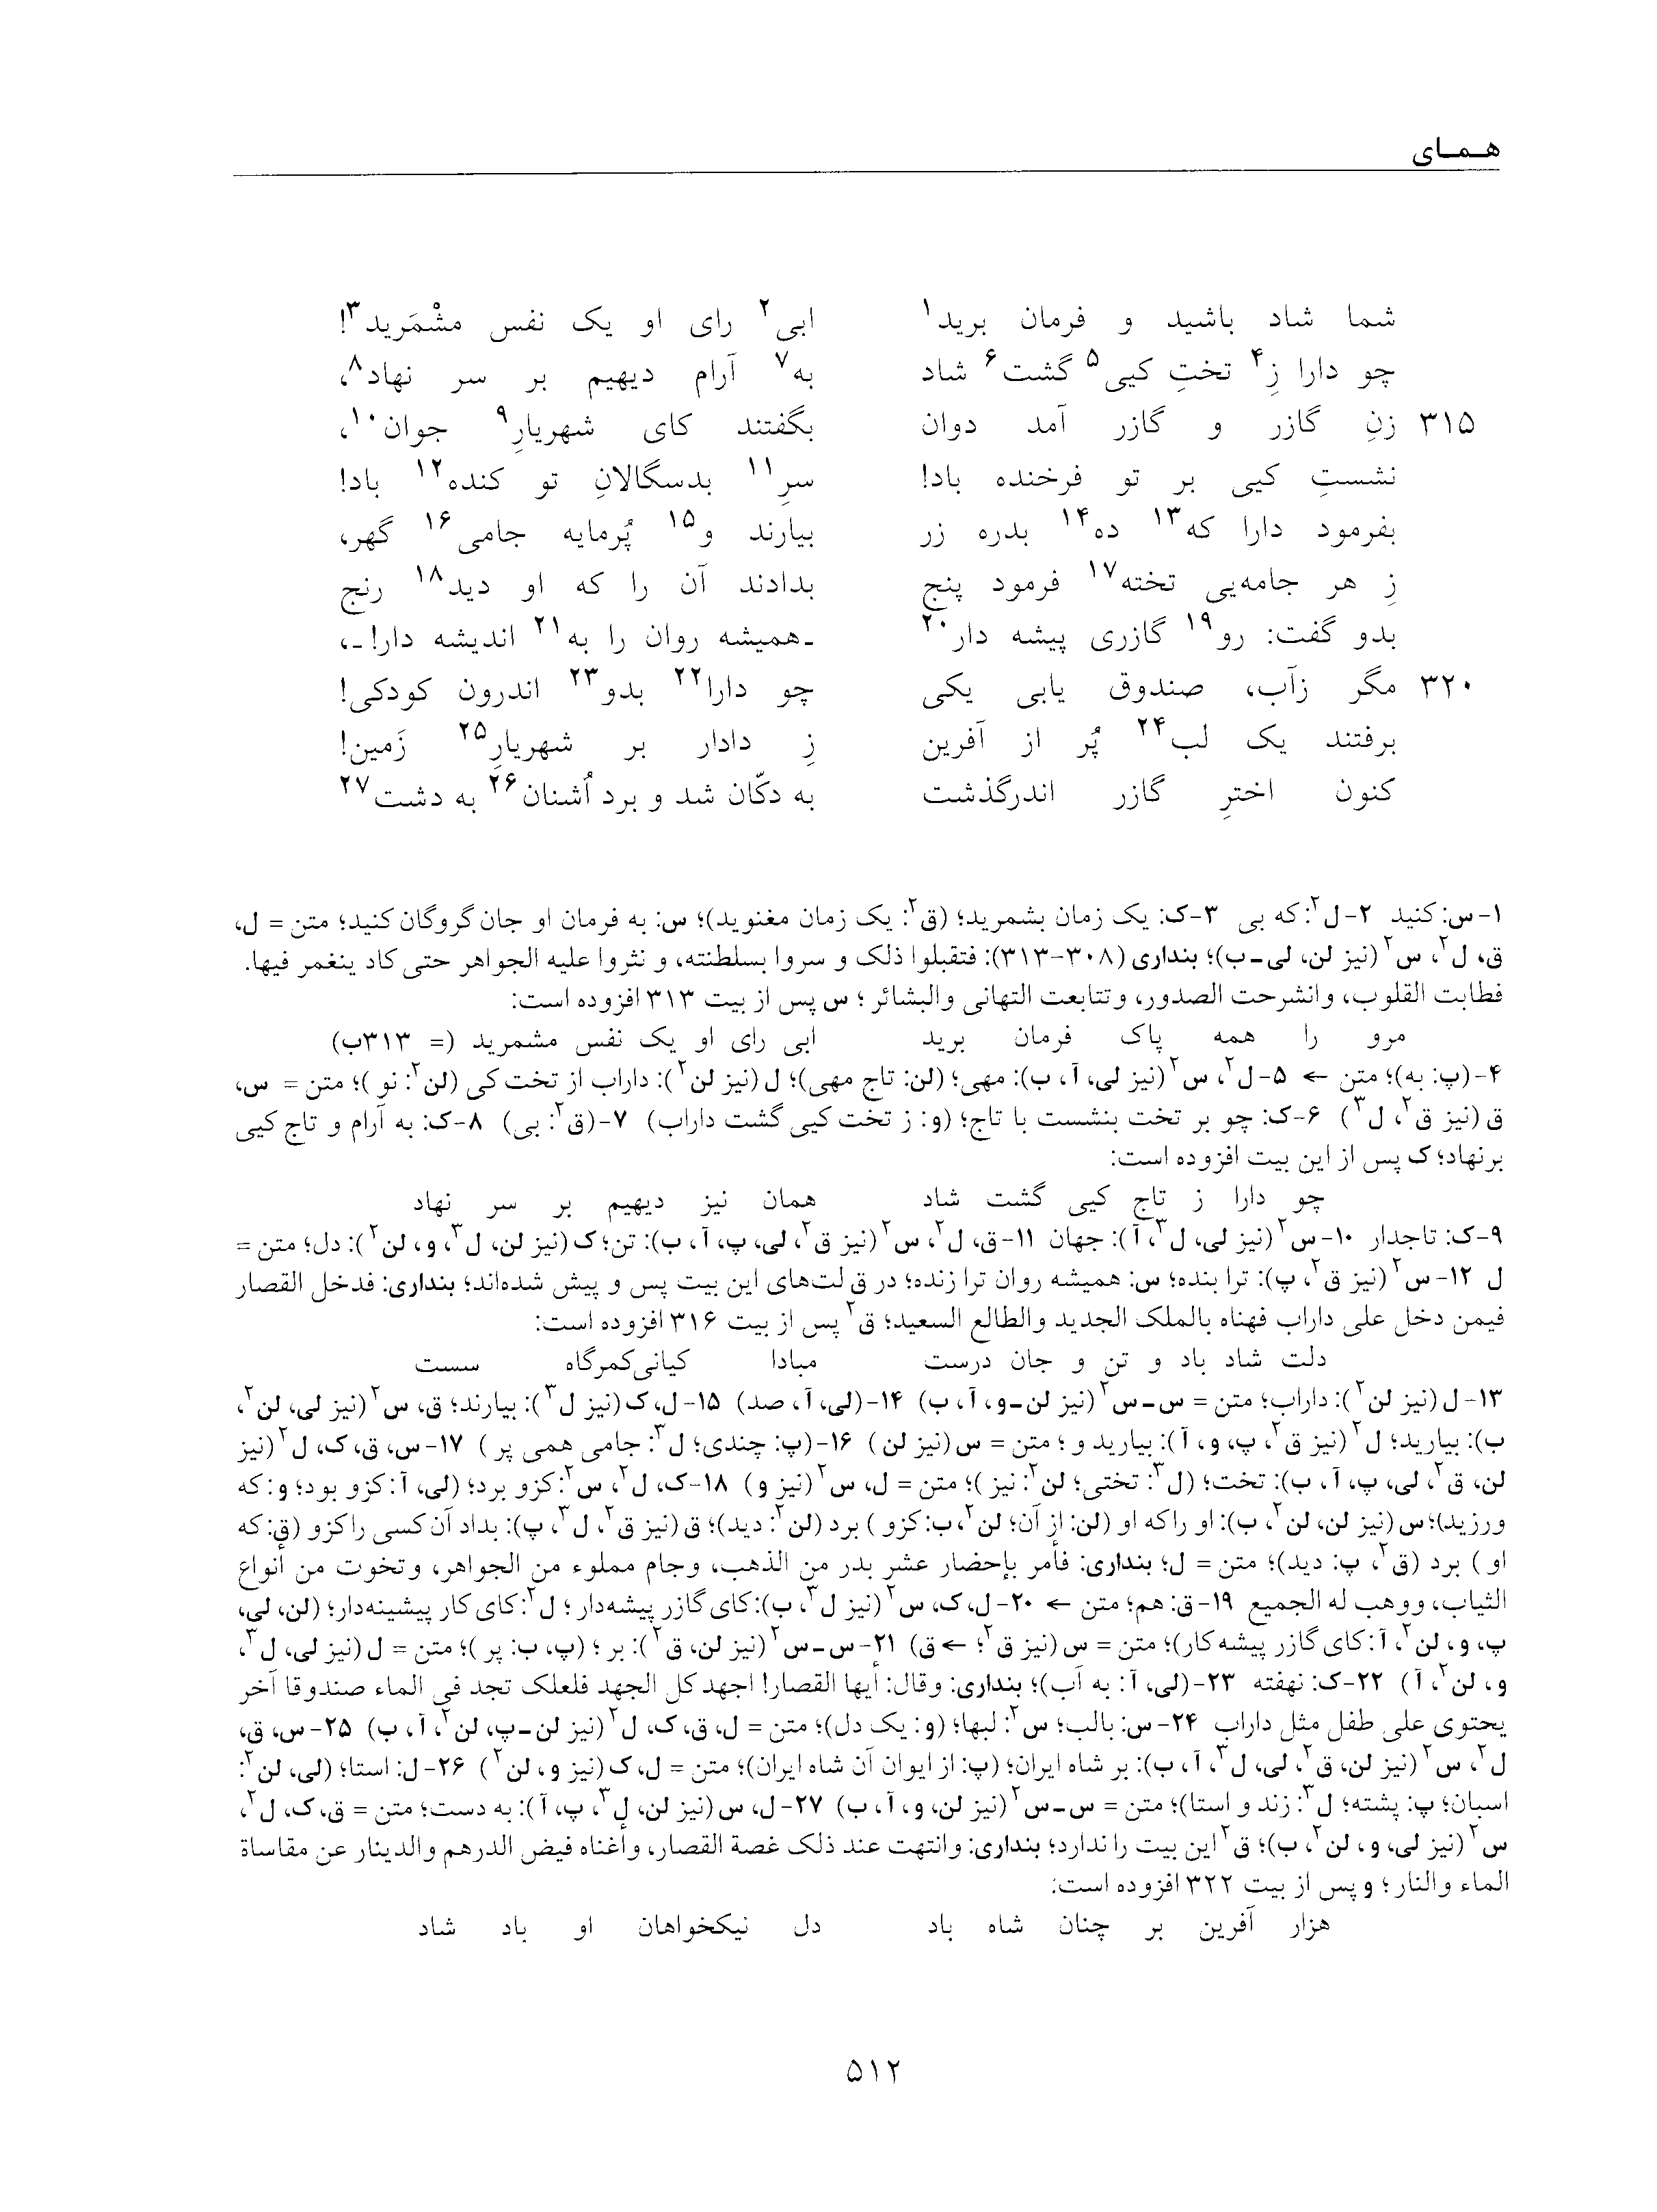 vol. 5, p. 512